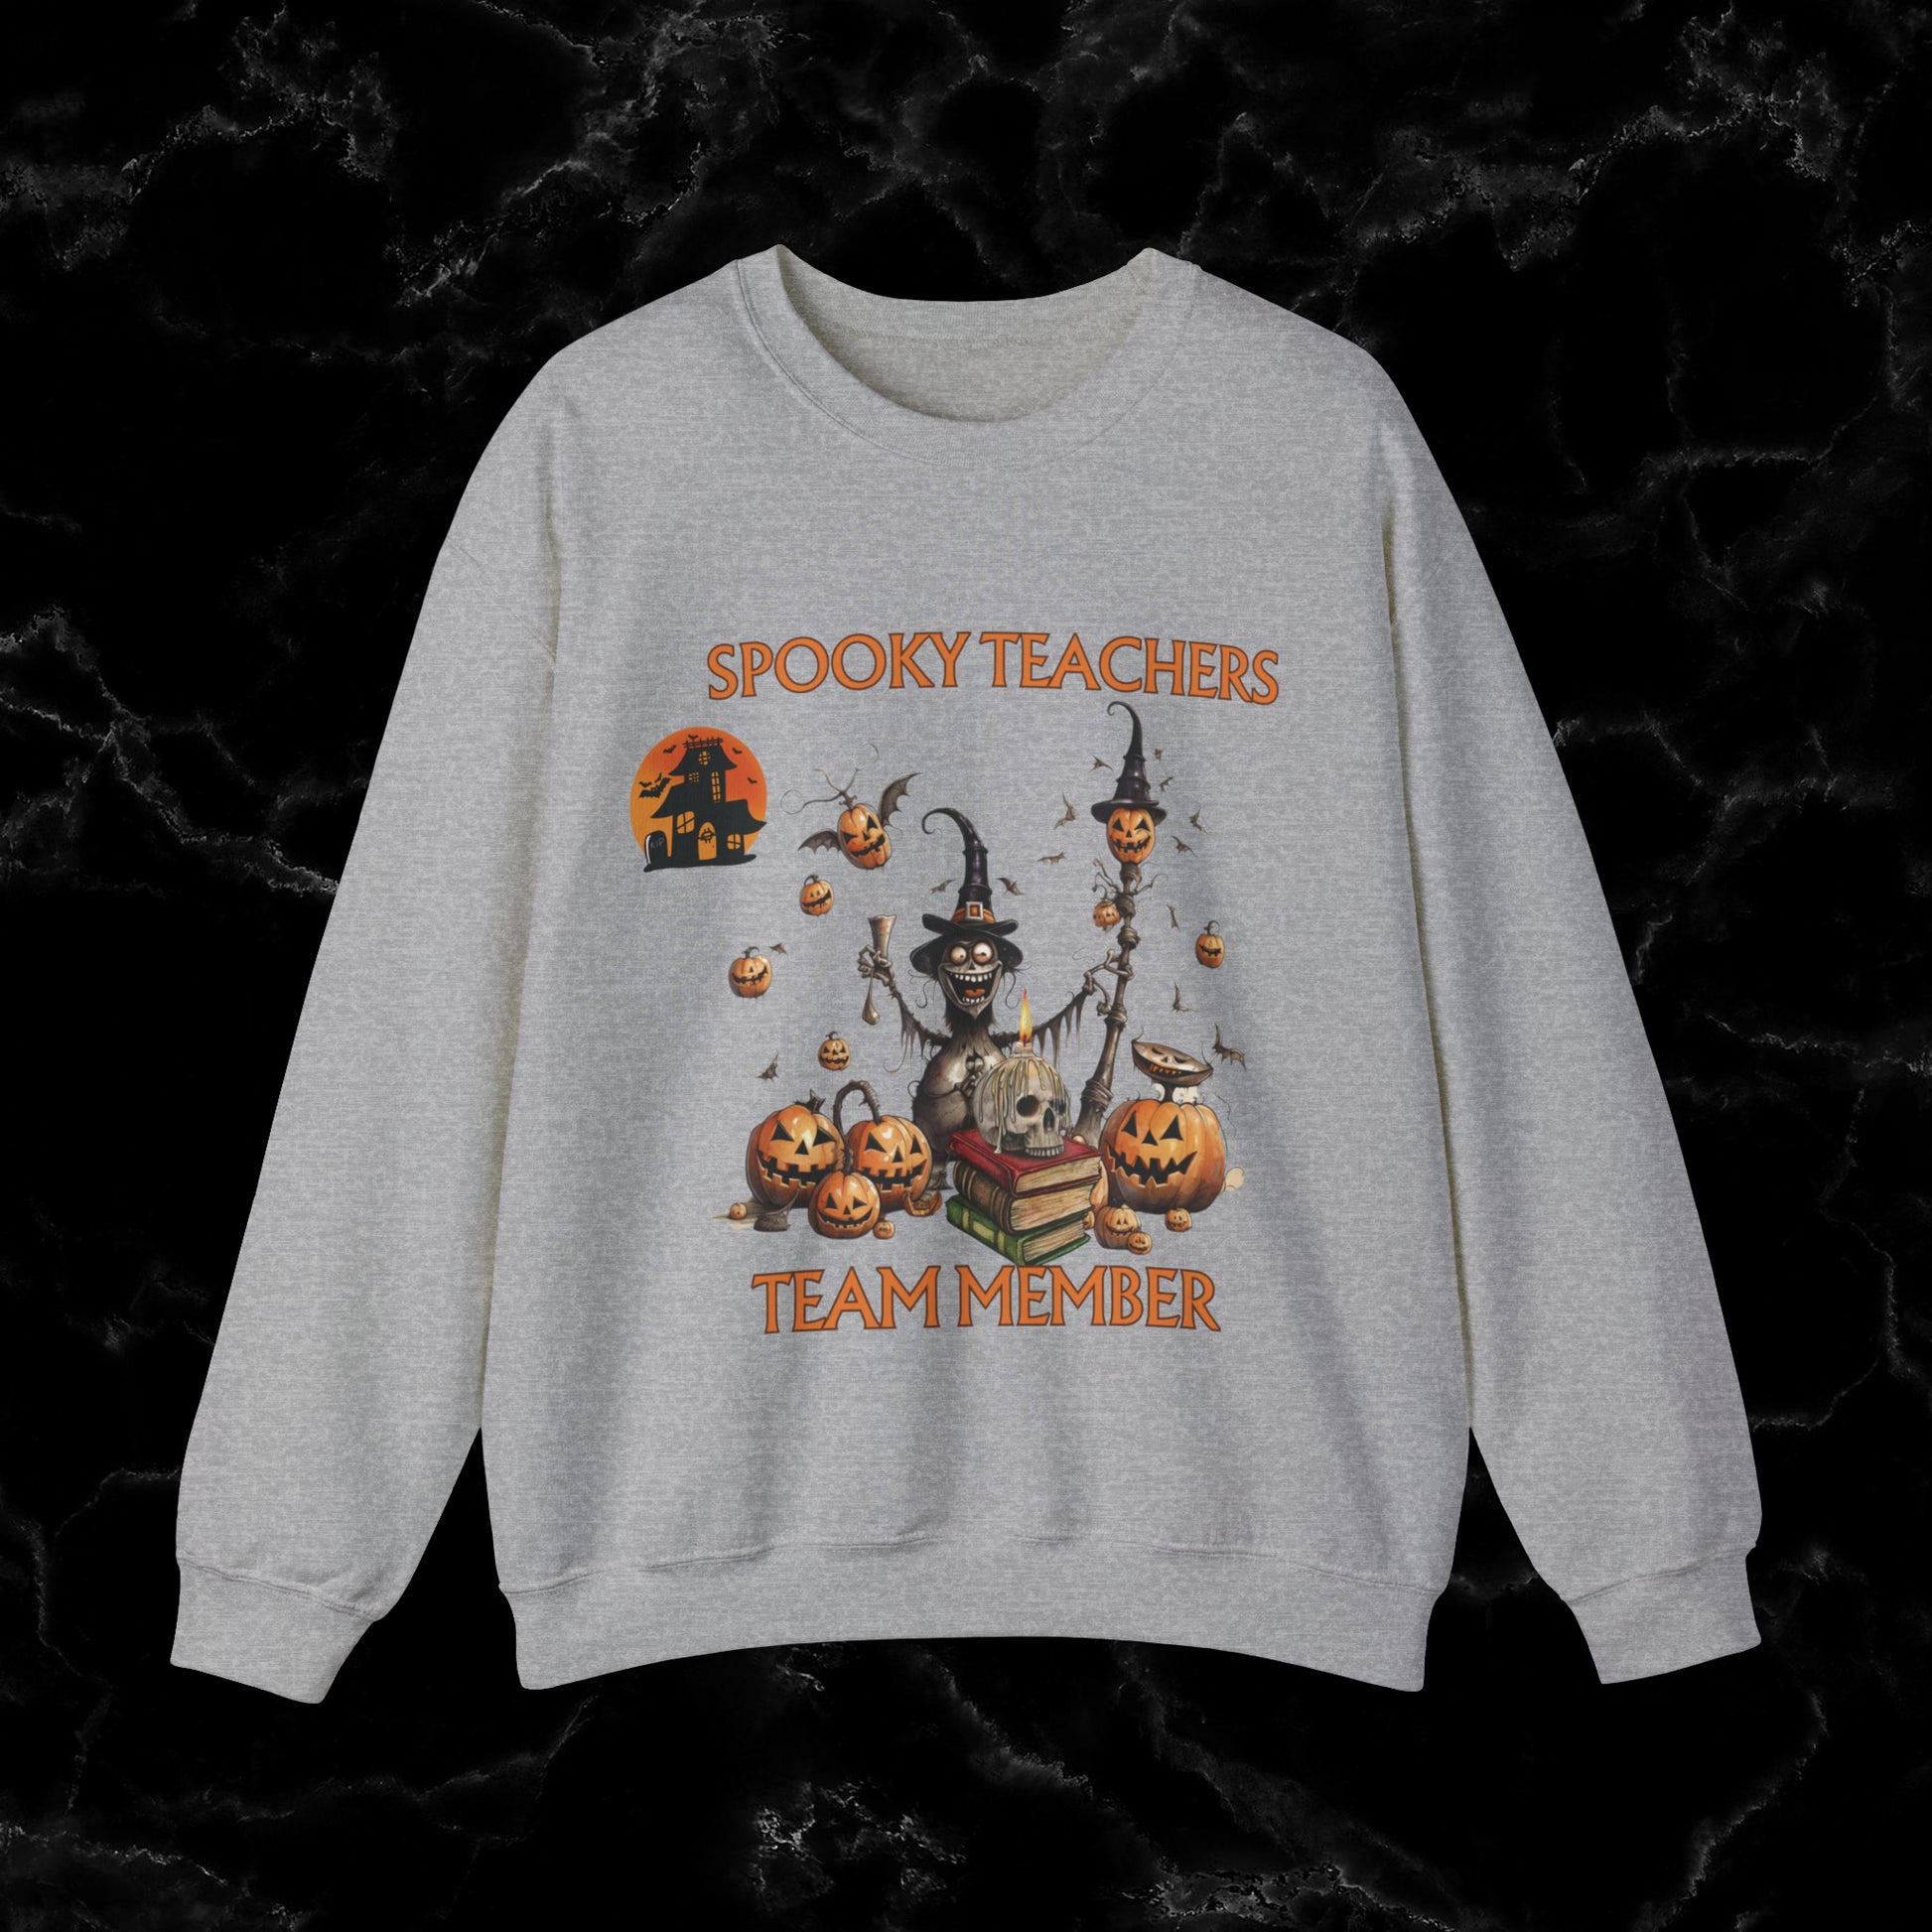 Spooky Teachers Sweatshirt - Embrace Feral Halloween Fun with this Halloween Spooky Sweatshirt for a Hauntingly Stylish Look Sweatshirt S Sport Grey 